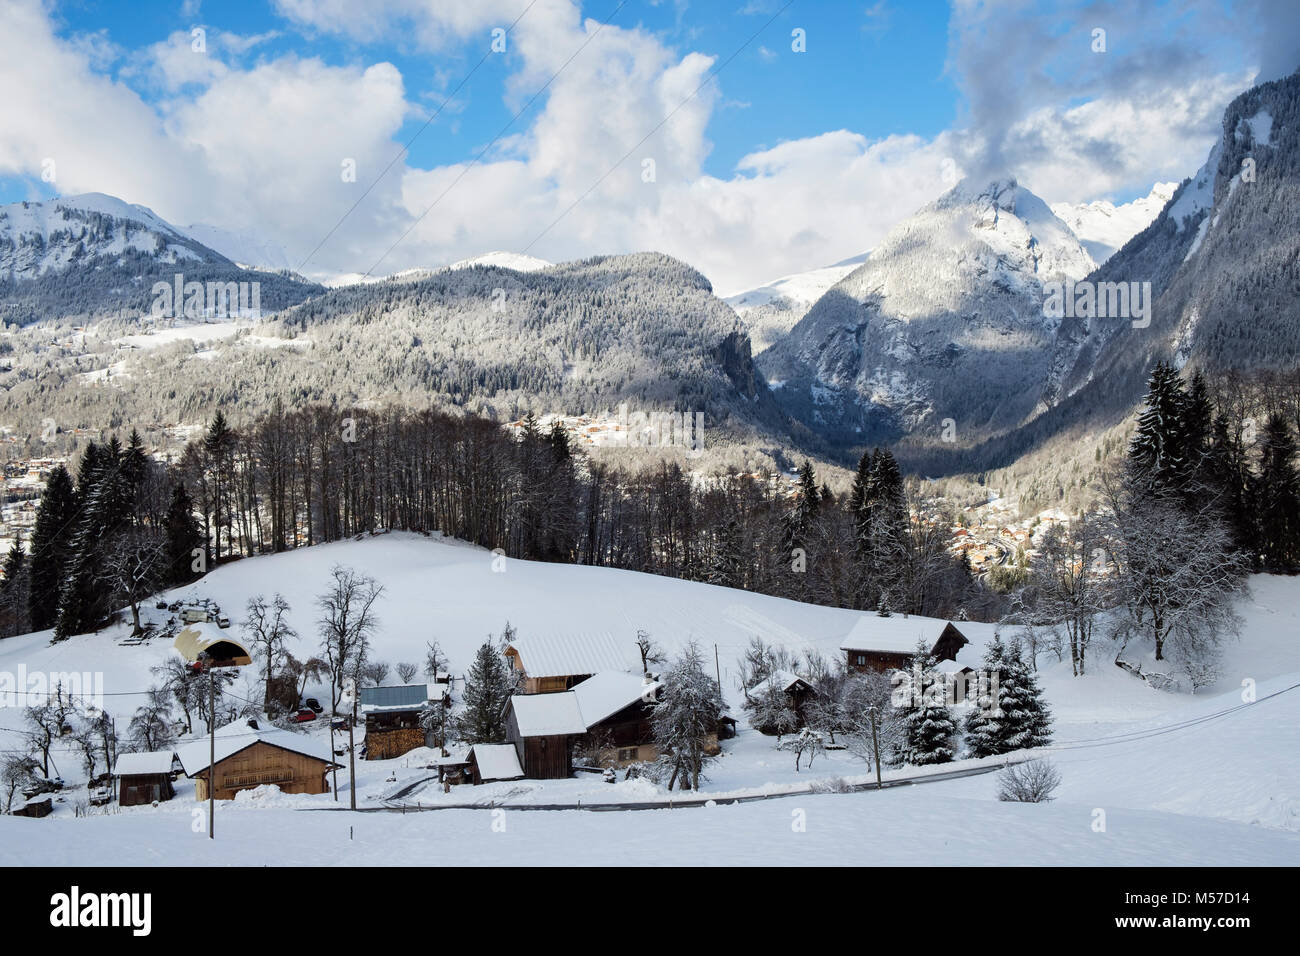 Vue sur les chalets traditionnels en montagne avec neige d'hiver sur les montagnes des Alpes françaises au-dessus du village de Samoëns, Vallée du Giffre, France, UE Banque D'Images